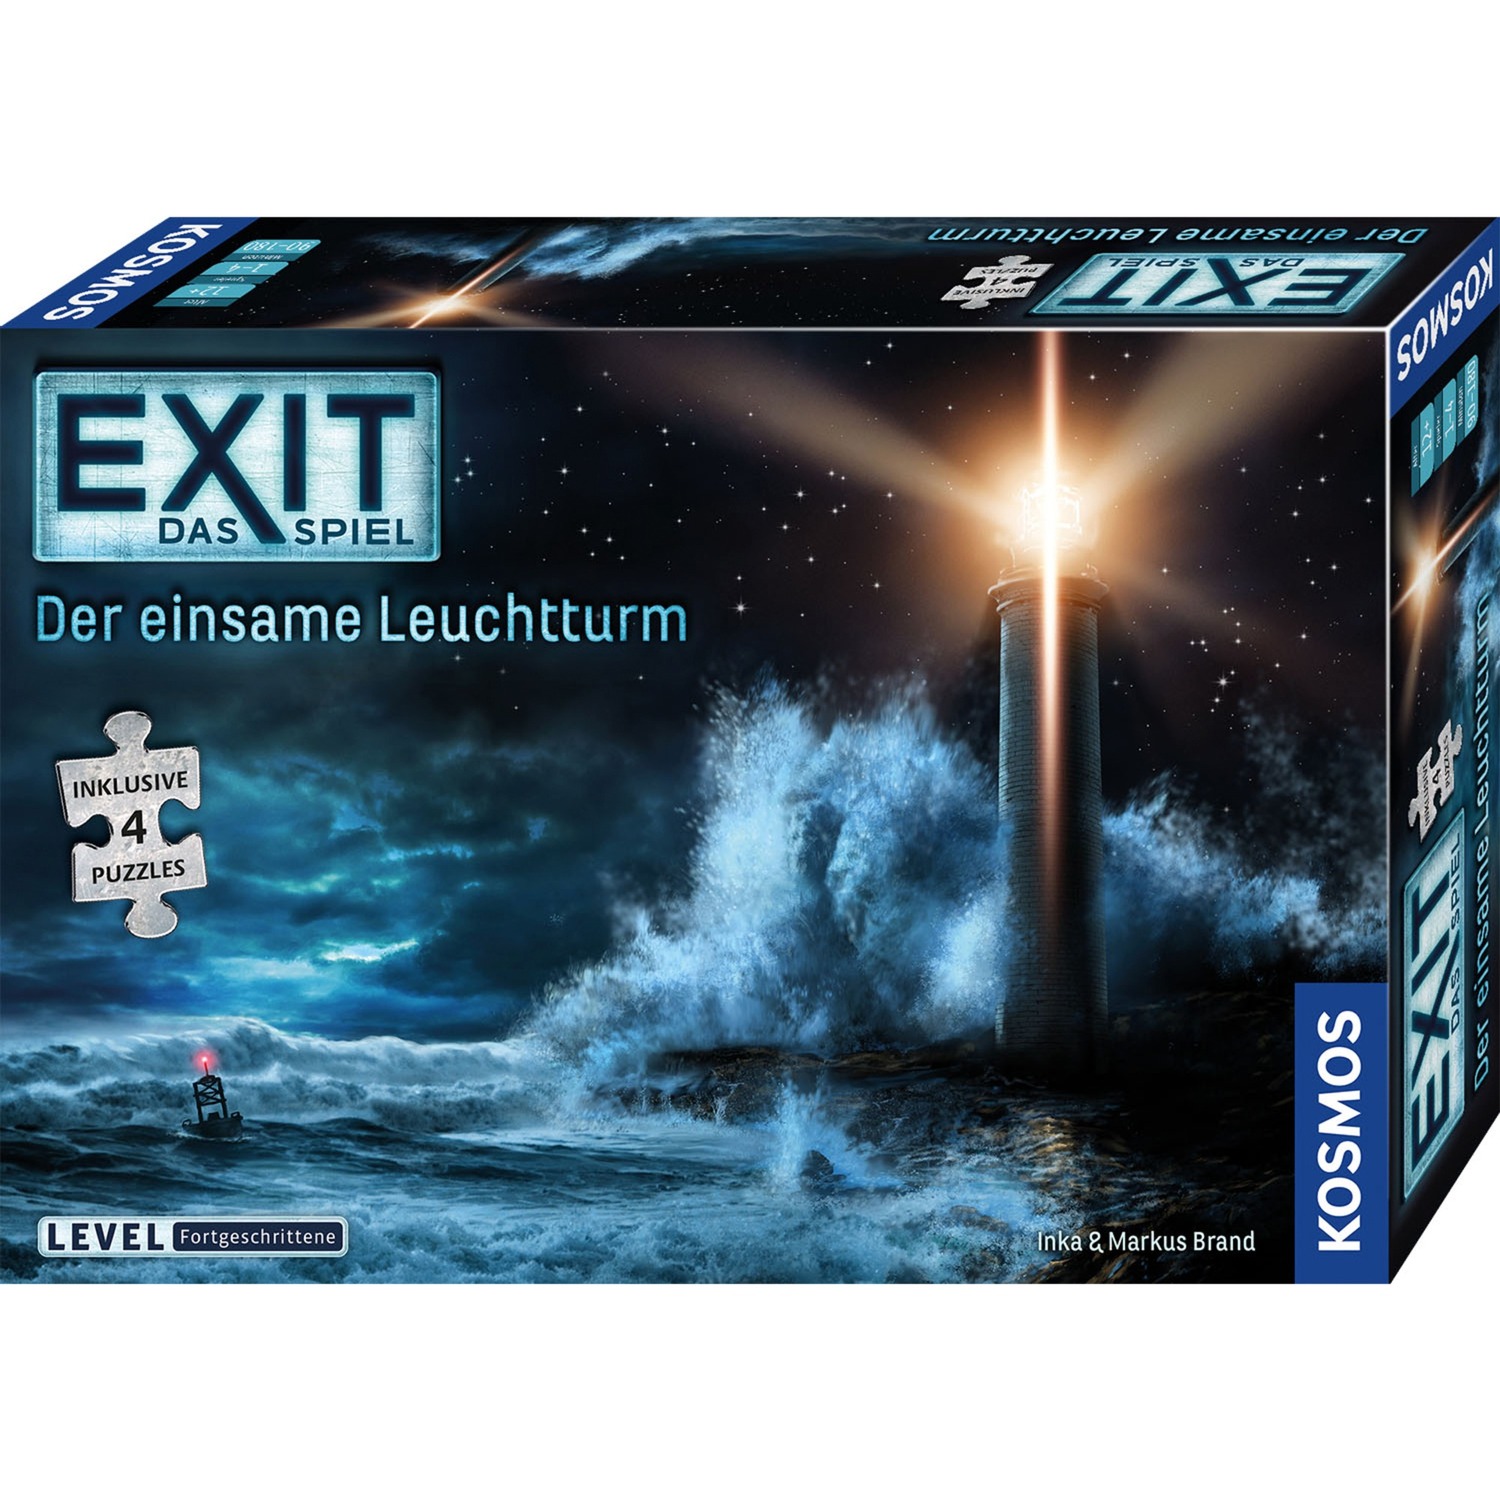 Image of Alternate - EXIT - Das Spiel + Puzzle - Der einsame Leuchtturm, Partyspiel online einkaufen bei Alternate